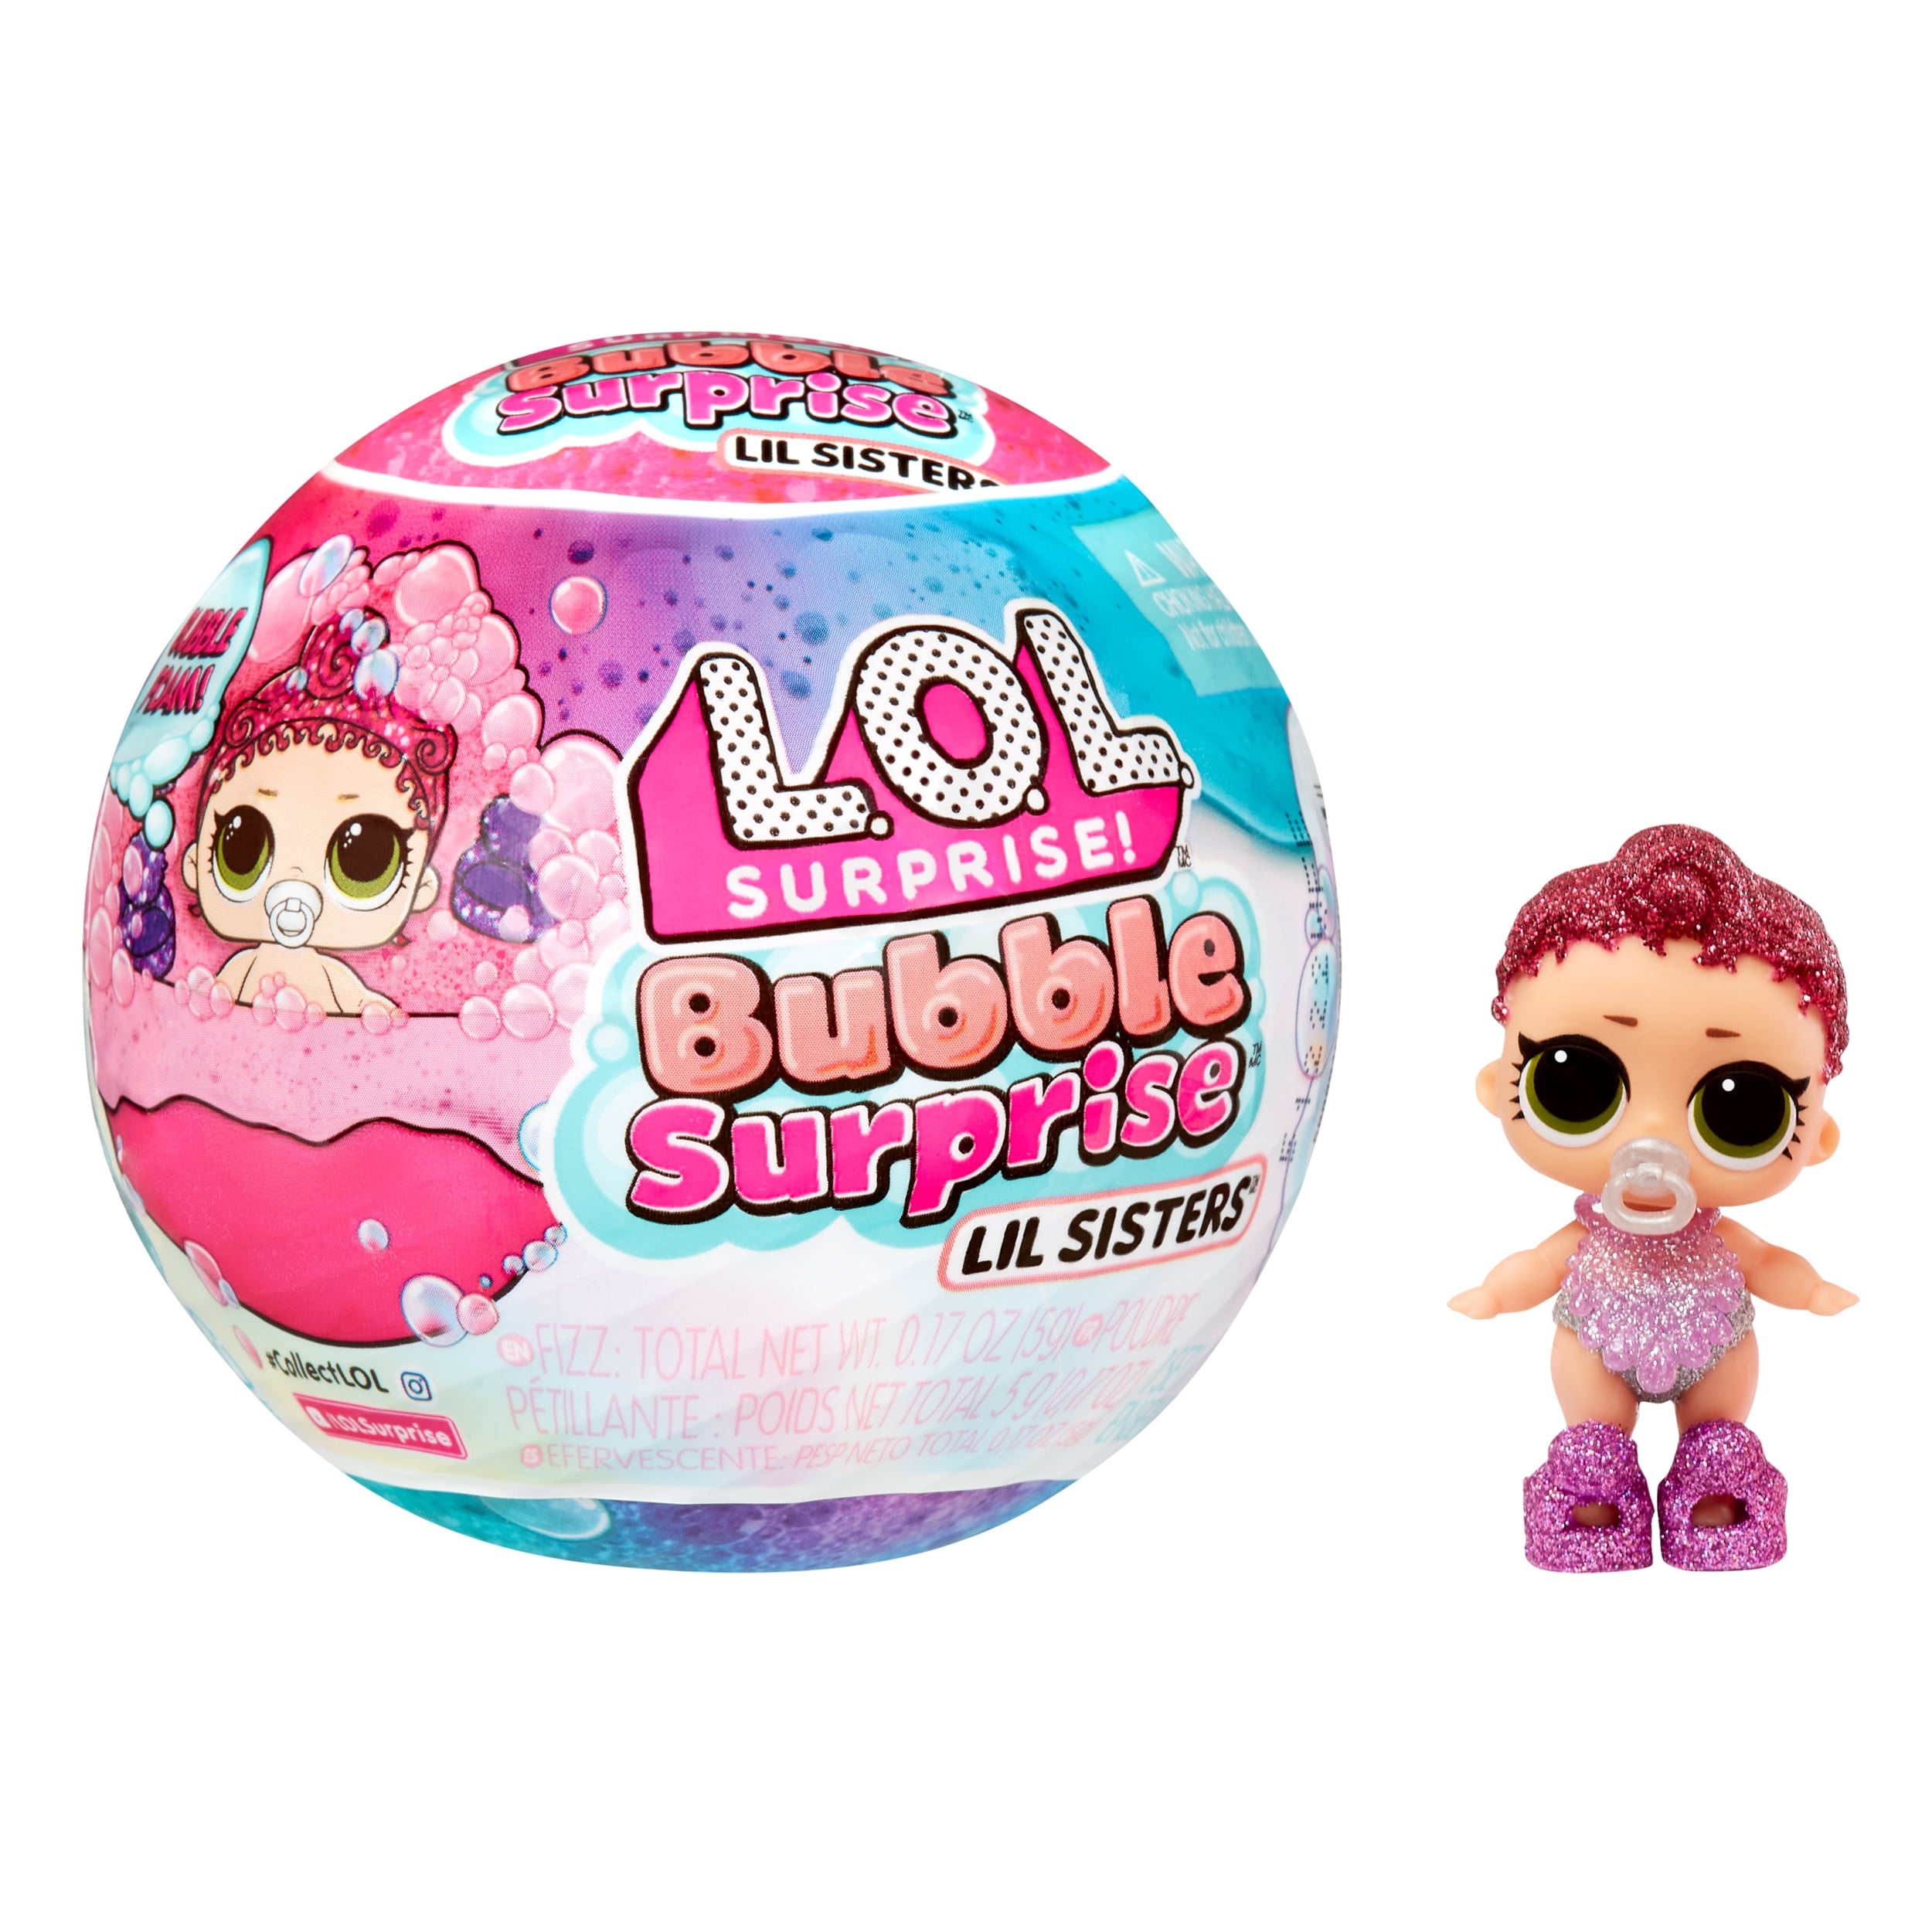 LOL Surprise! Bubble Surprise Deluxe Collectible Dolls, Pet, Baby Sister,  Surprises, Accessories, Surprise Unboxing, Color Change Foam, Girls Gift  Age 4+ 